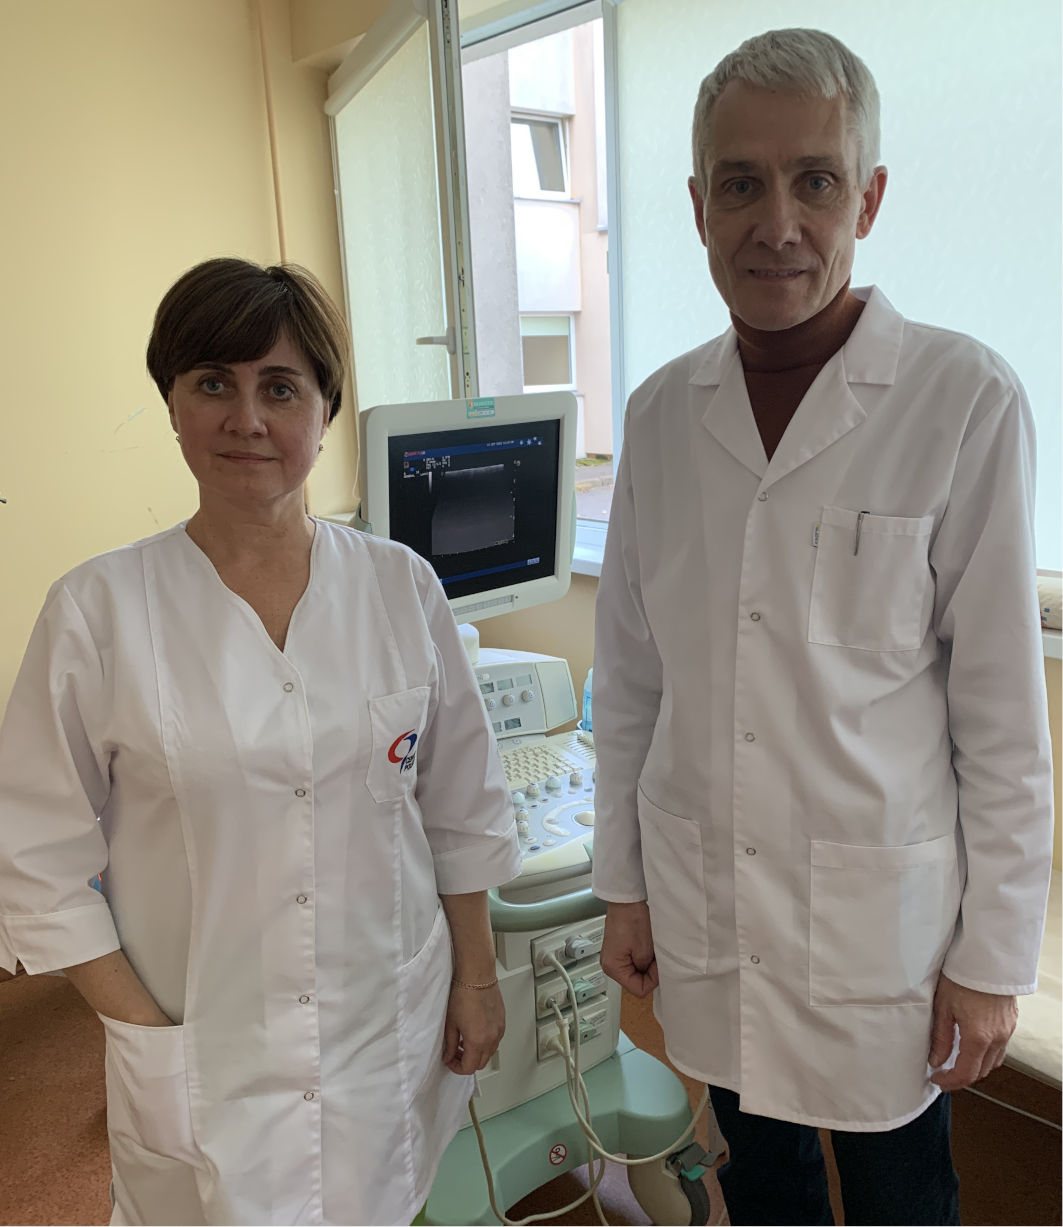 Mūsų ligoninėje įsidarbinusi gydytoja iš Ukrainos: „Supratau, kad noriu čia dirbti“